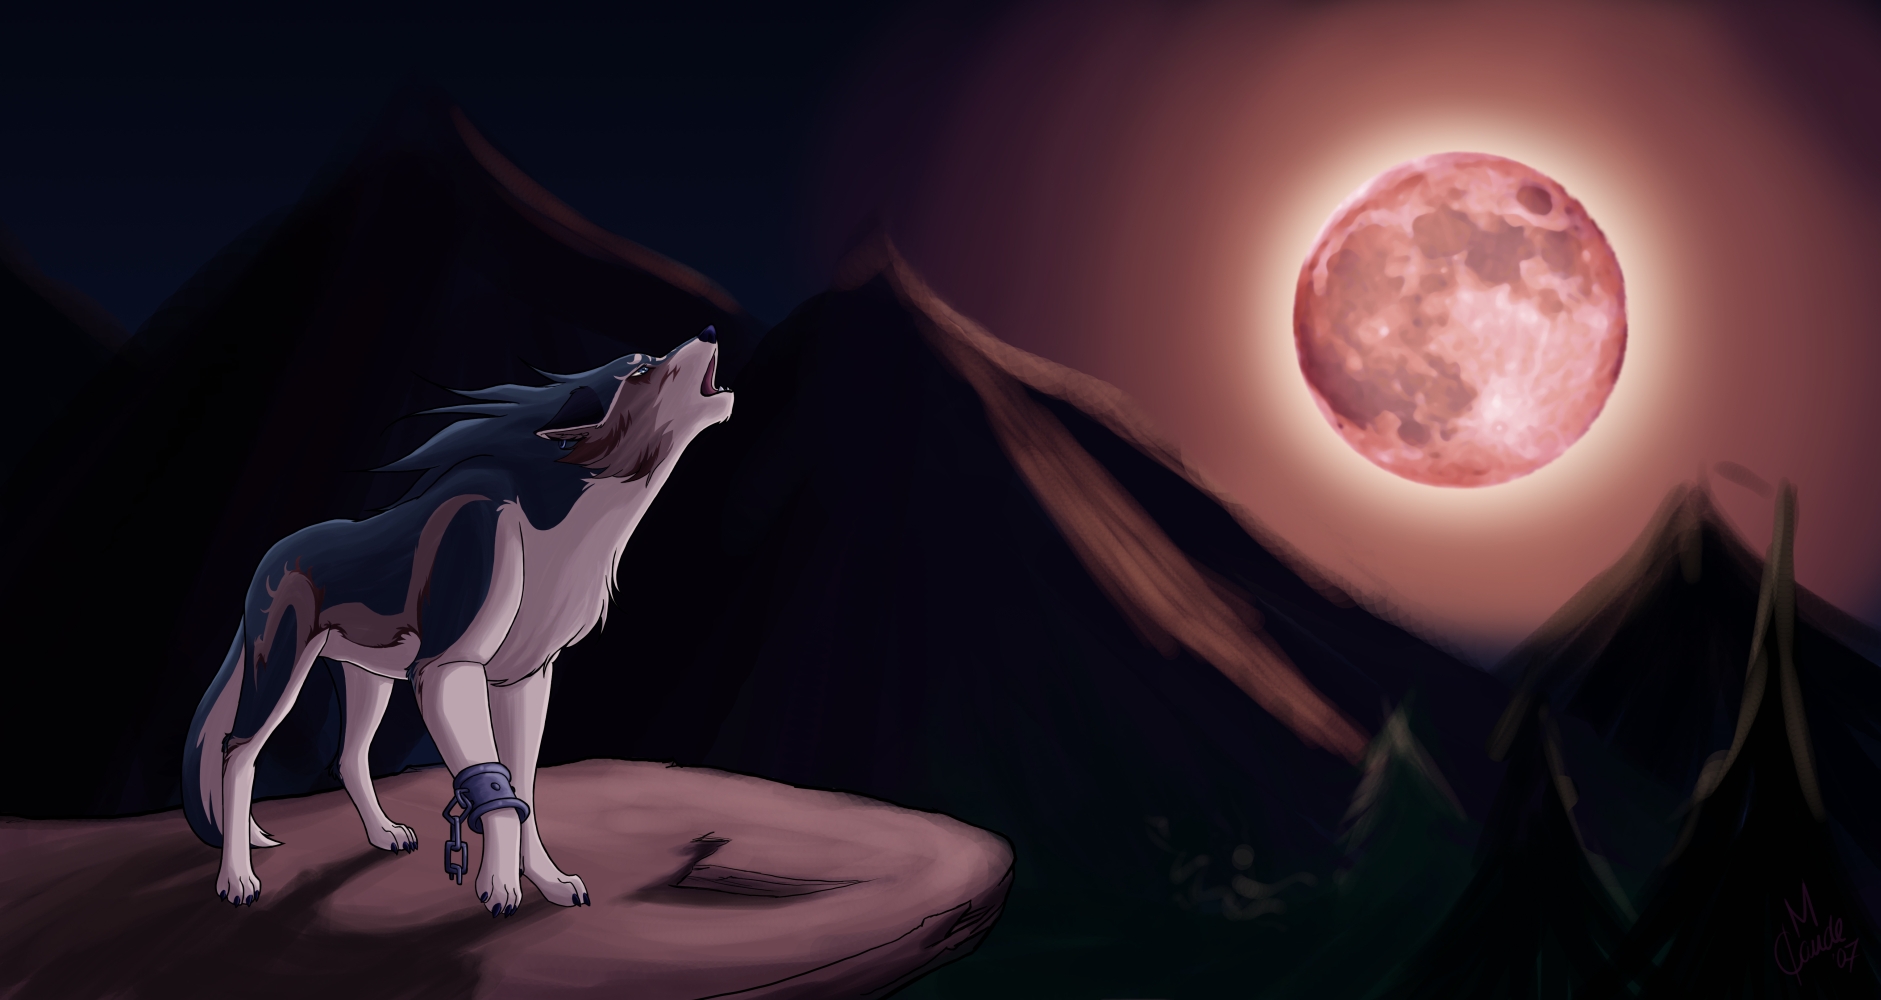 عکس با کیفیت hd و زیبا از زوزه گرگ در کنار قرص کامل ماه